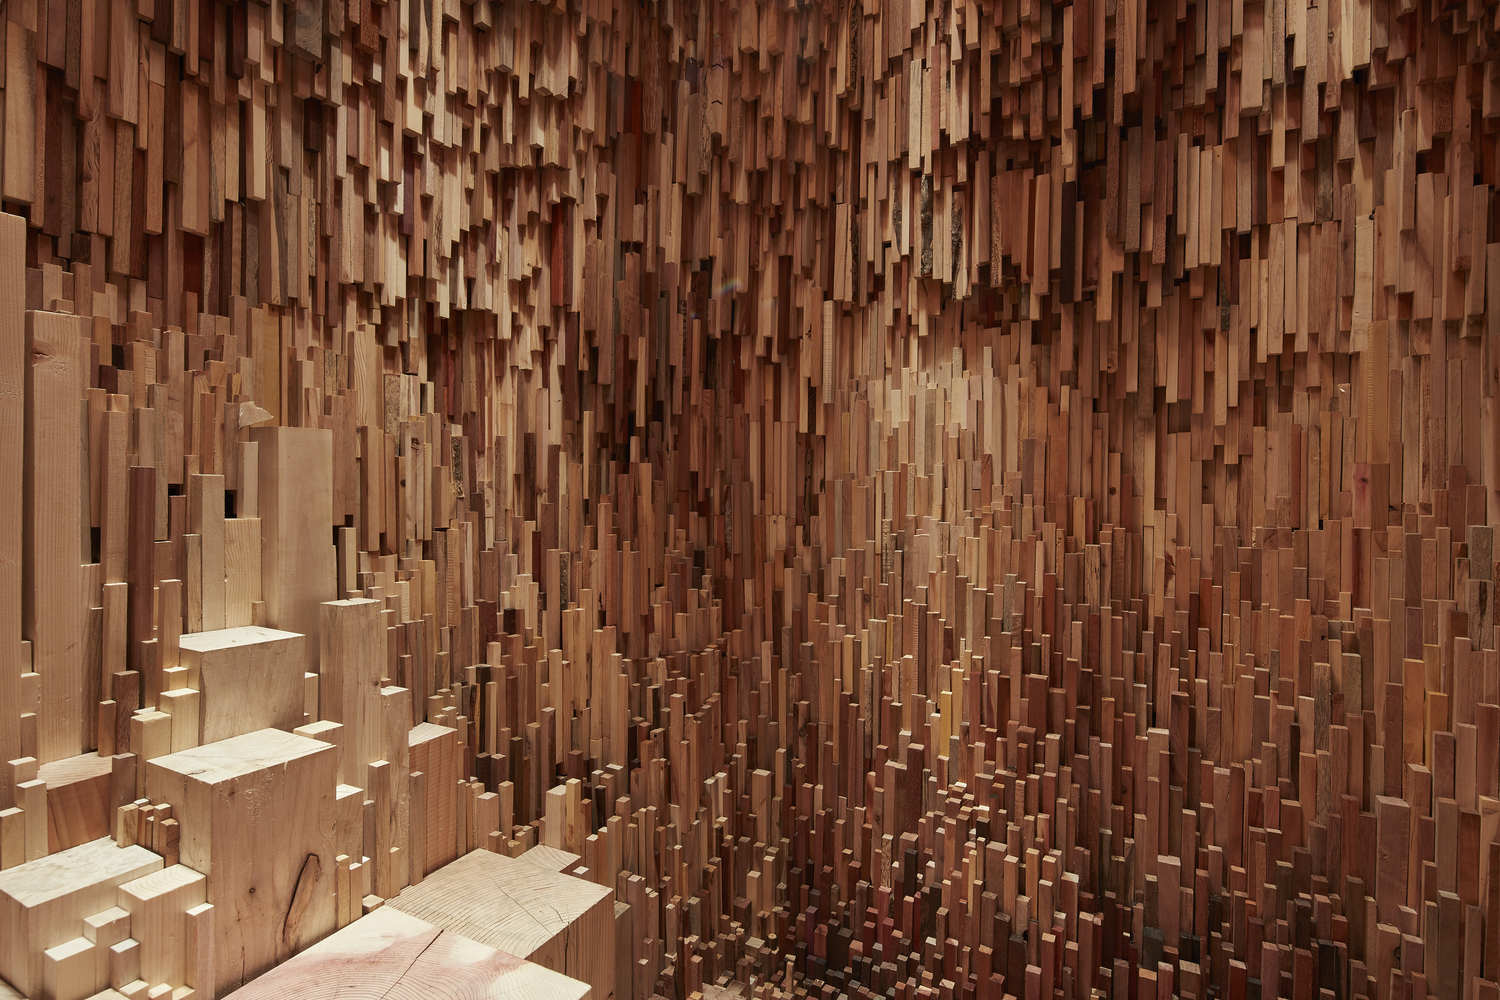 设计案例 设计资讯 艺术家收集一万种木材打造树木版"种子神殿"